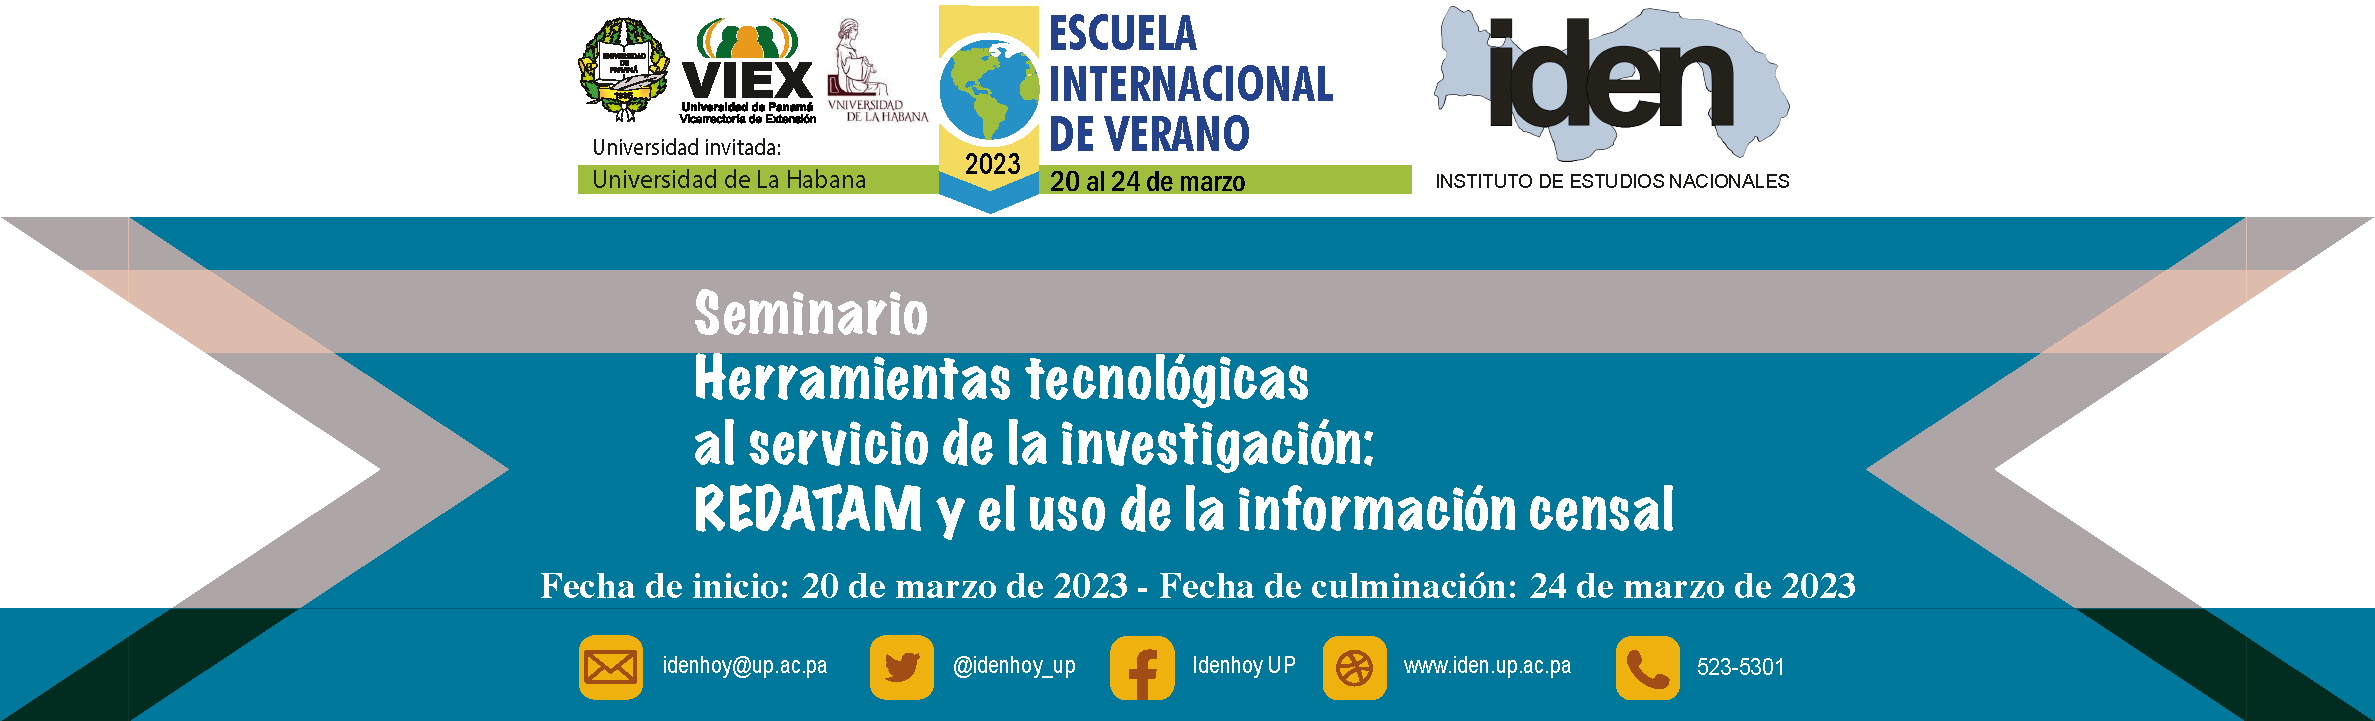 Slide: Herramientas tecnológicas al servicio de la investigación REDATAM y el uso de la información censal